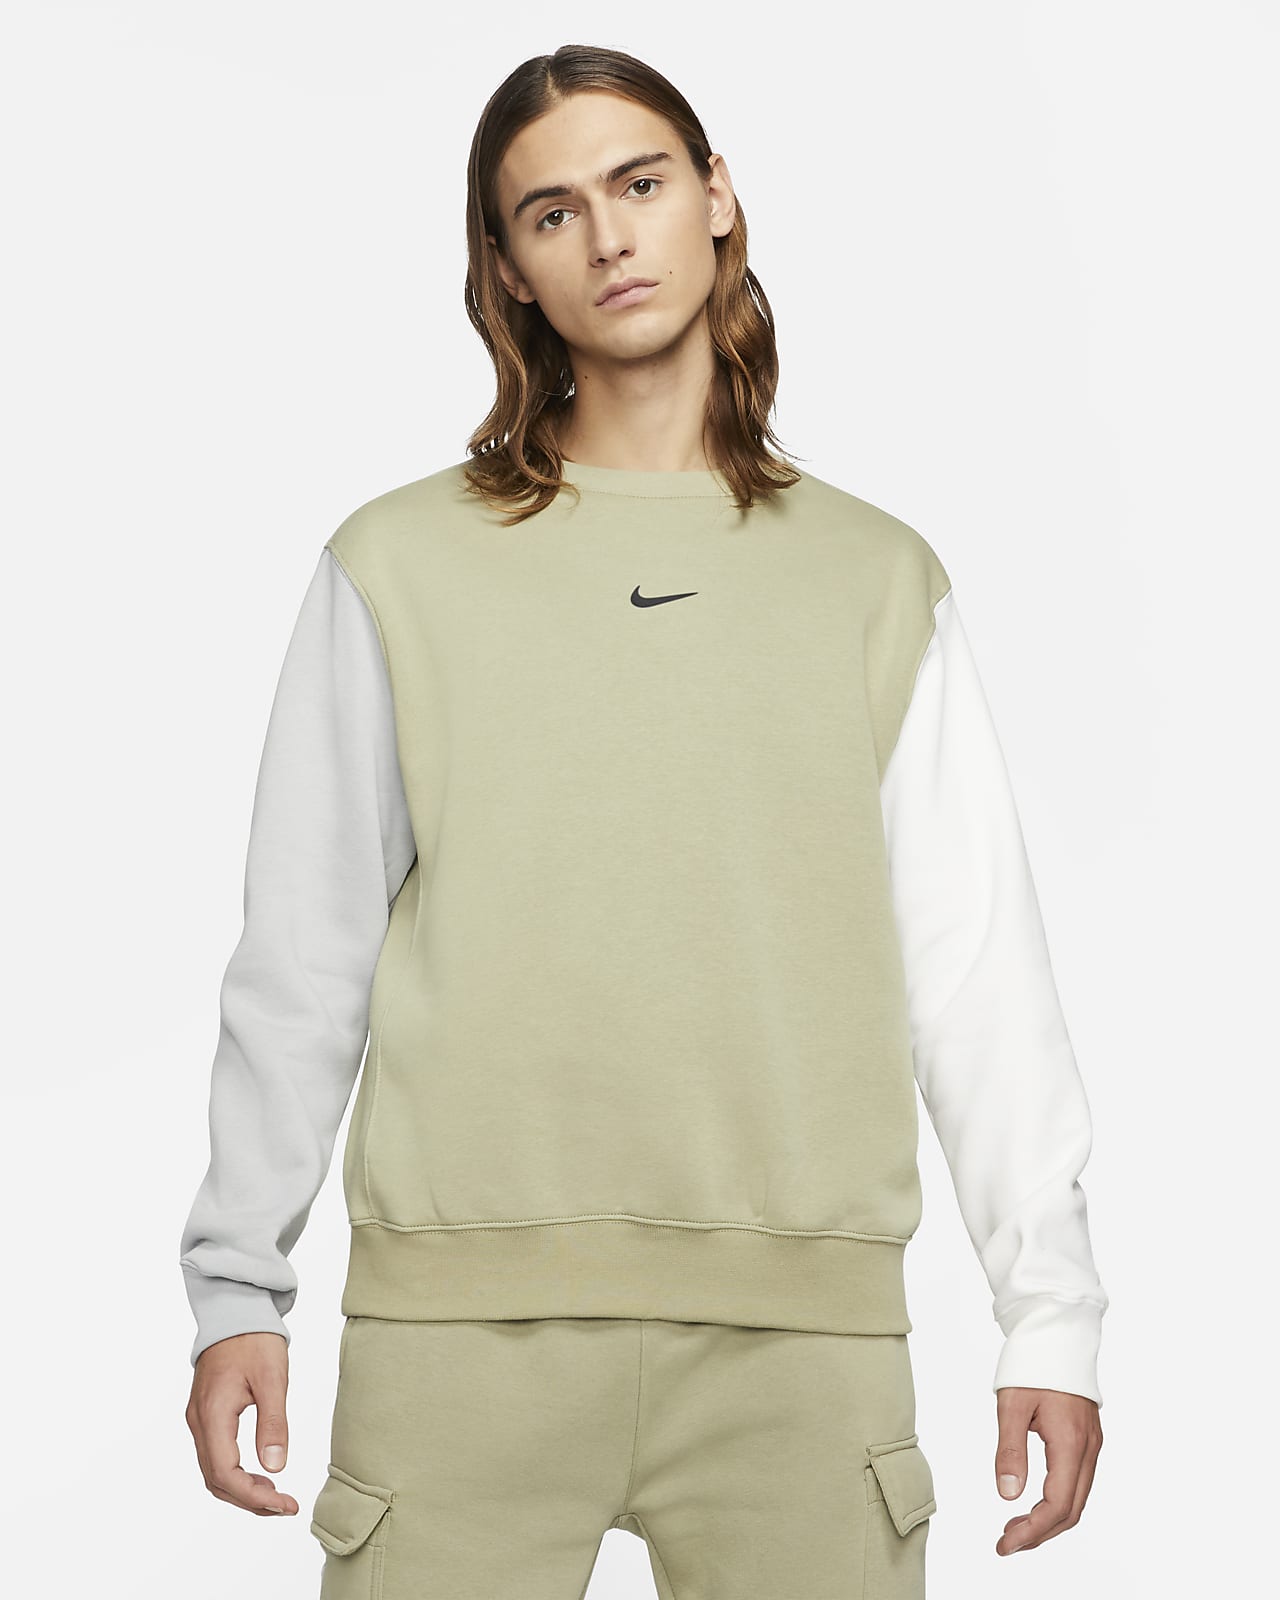 Nike Sportswear Men's Fleece Swoosh Crew. Nike NL